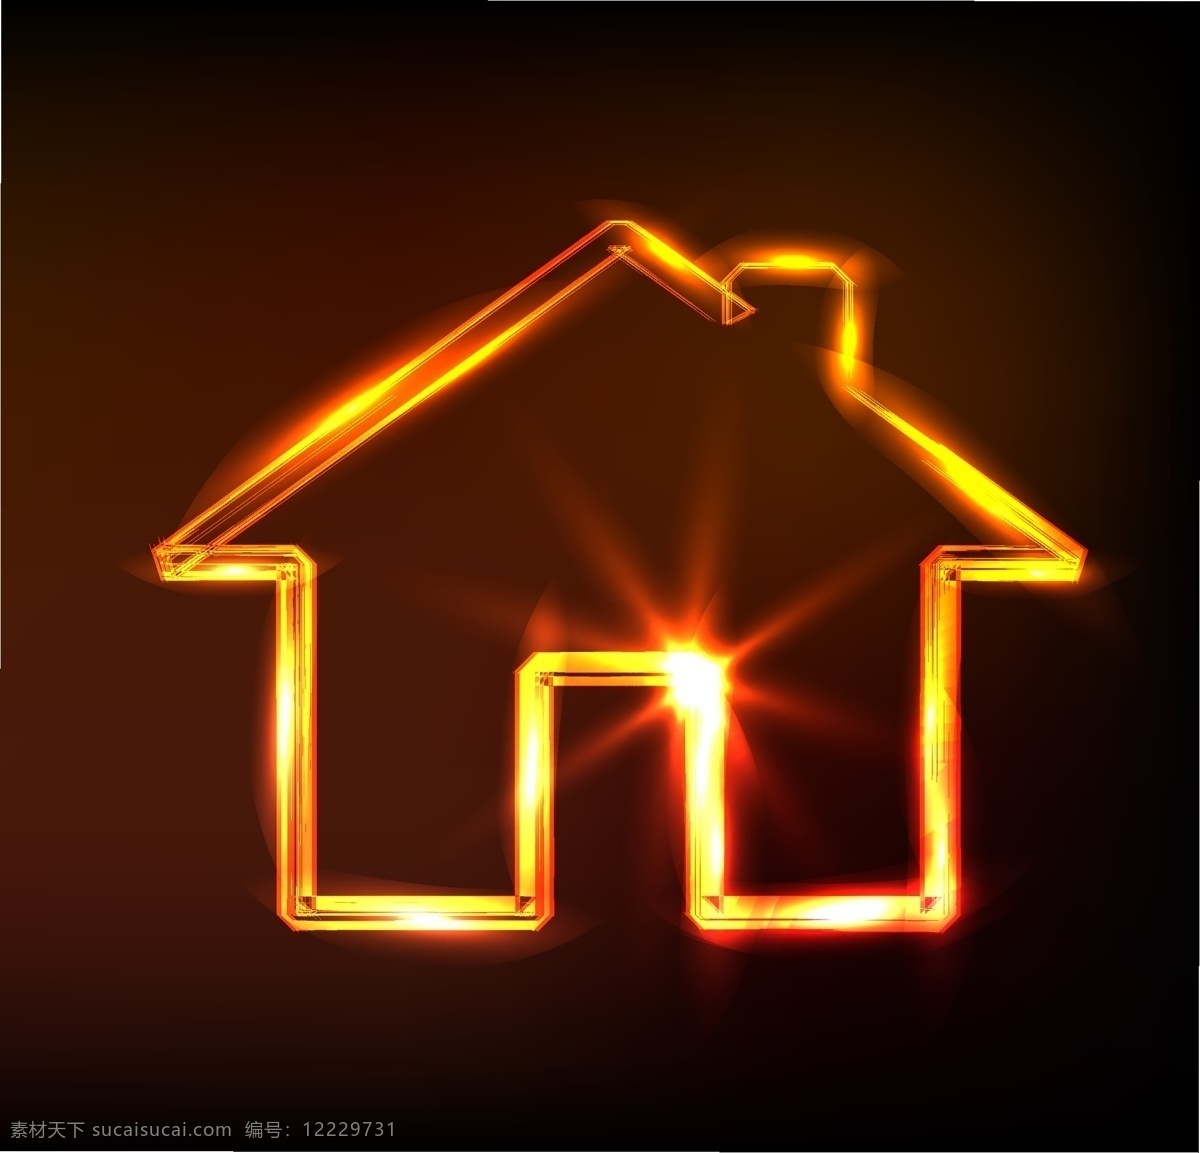 眩光 小 房子 矢量 强光 光 家庭 矢量素材 图标 小房子 其他载体 矢量图 其他矢量图